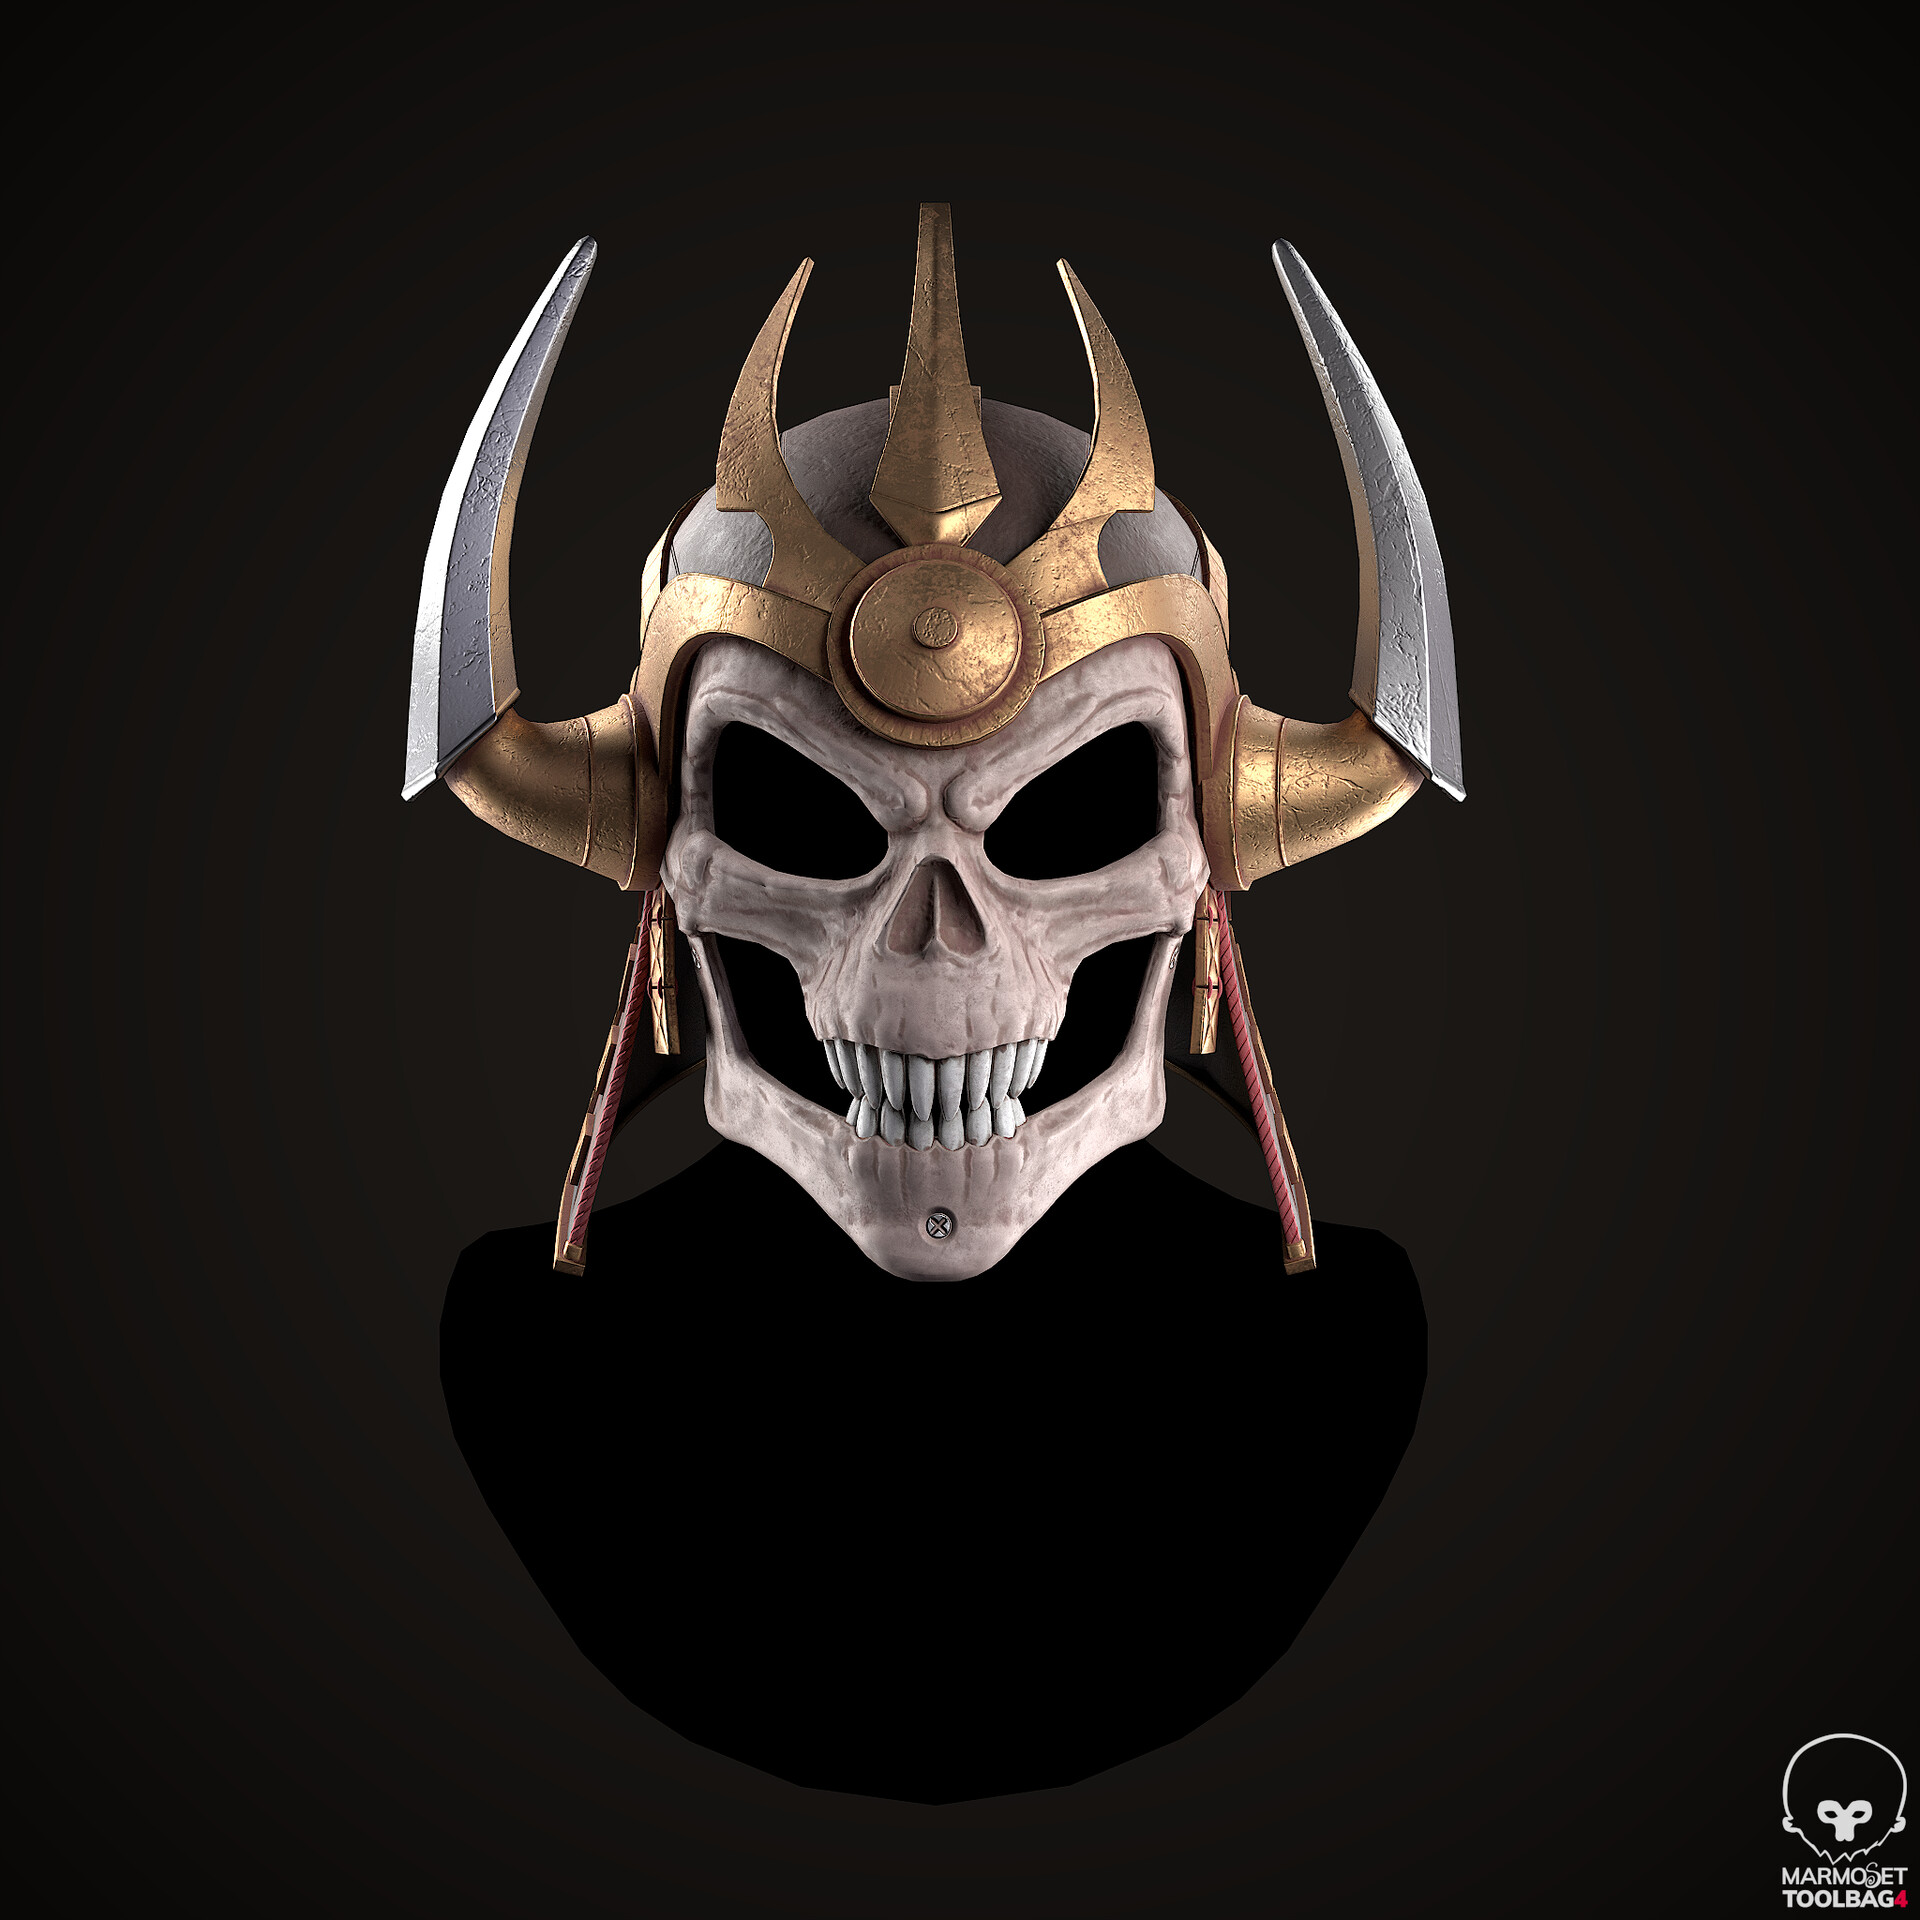 Shao Kahn Helmets (Mortal Kombat 11), Juan Novelletto on ArtStation at